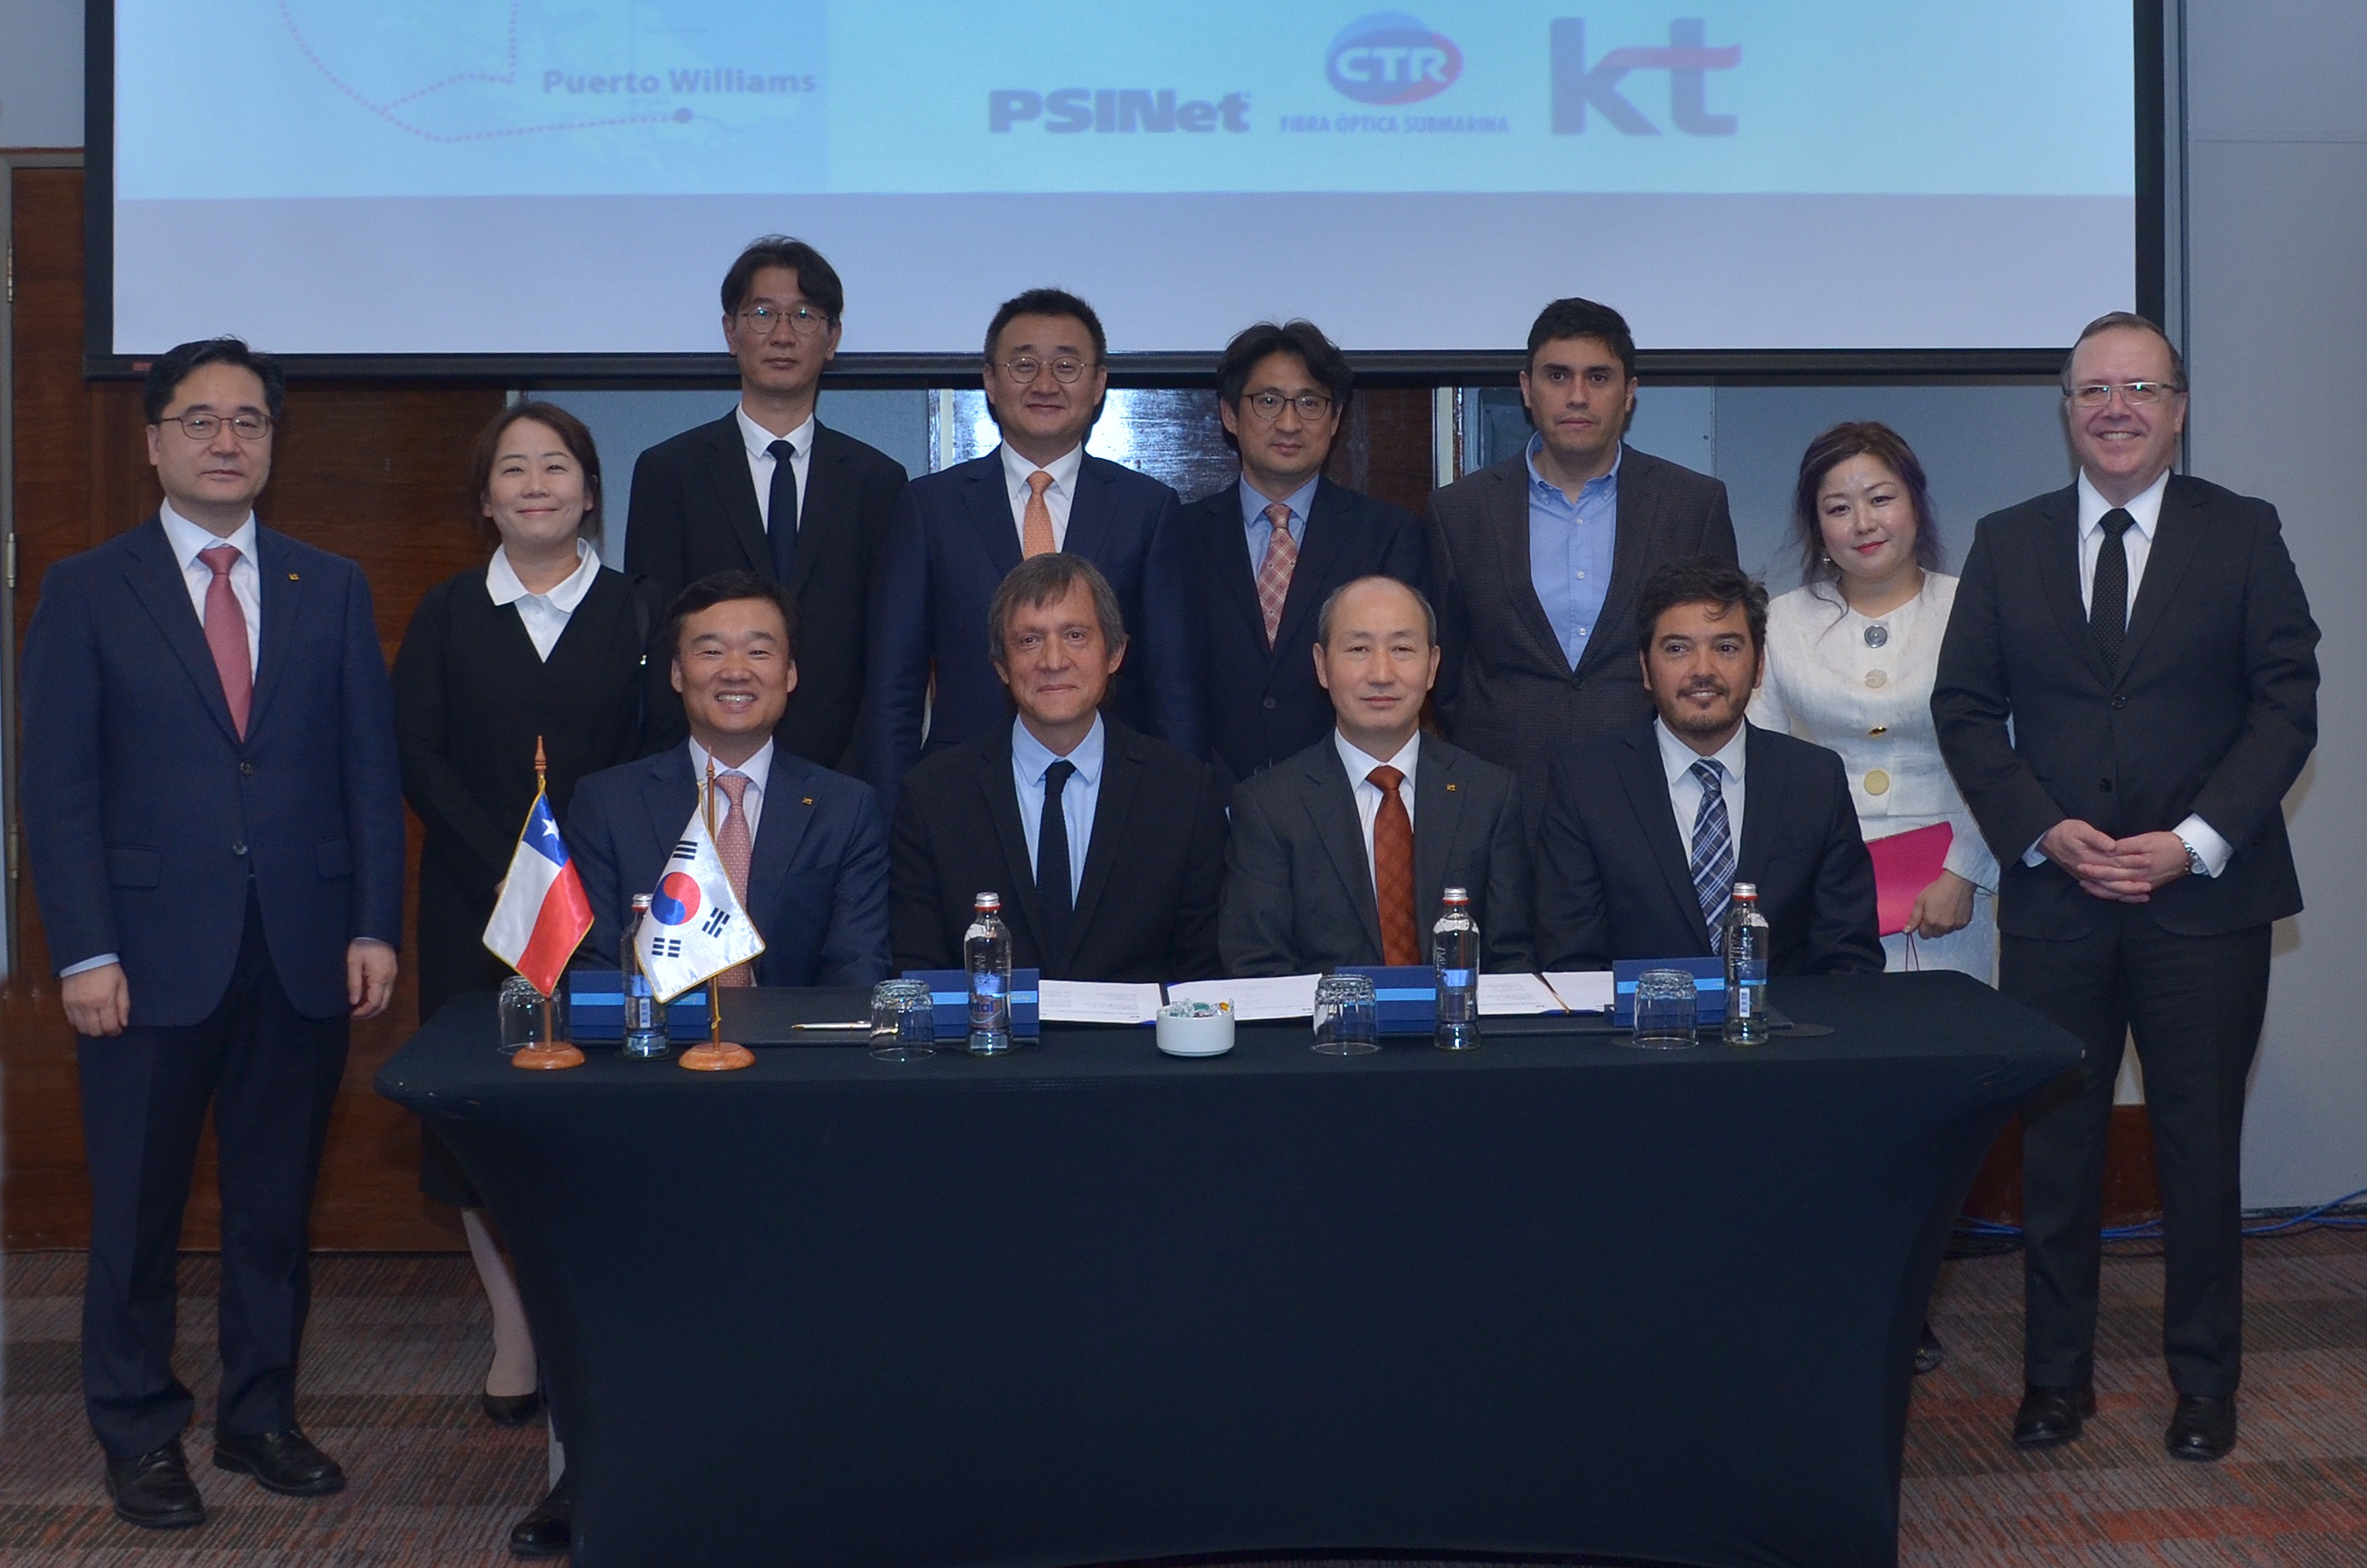 CTR y PSINET firman acuerdo con empresa coreana KT Corporation para potenciar proyecto de Fibra Optica Austral